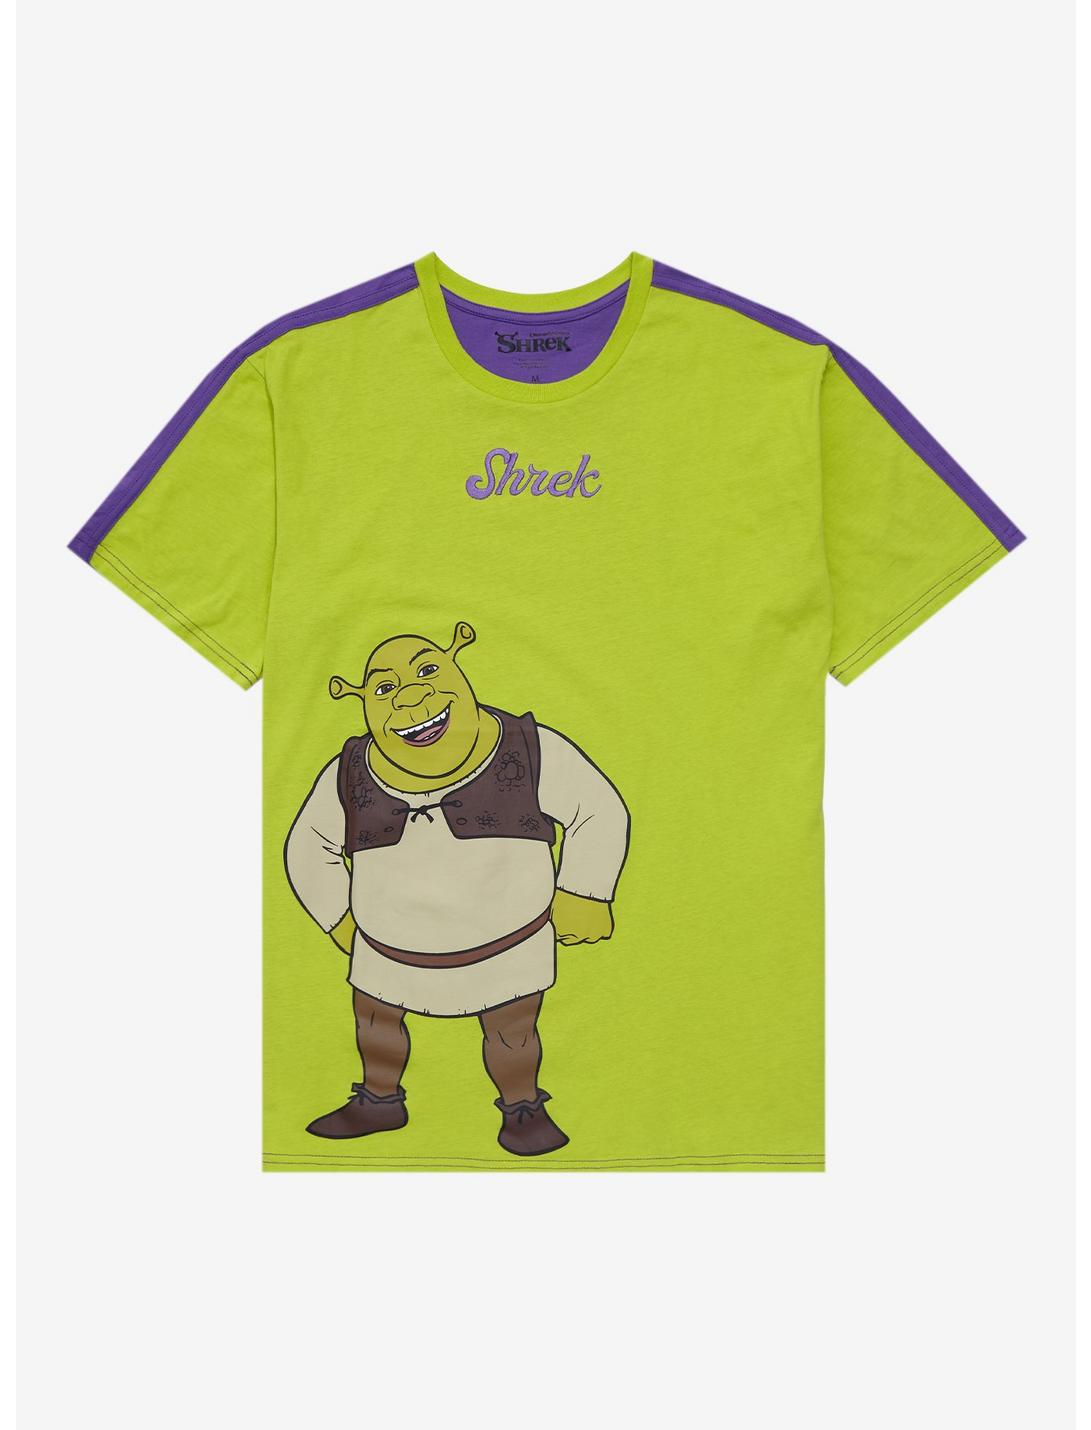 Shrek Portrait Duo-Tone Couples T-Shirt - BoxLunch Exclusive , MULTI, hi-res